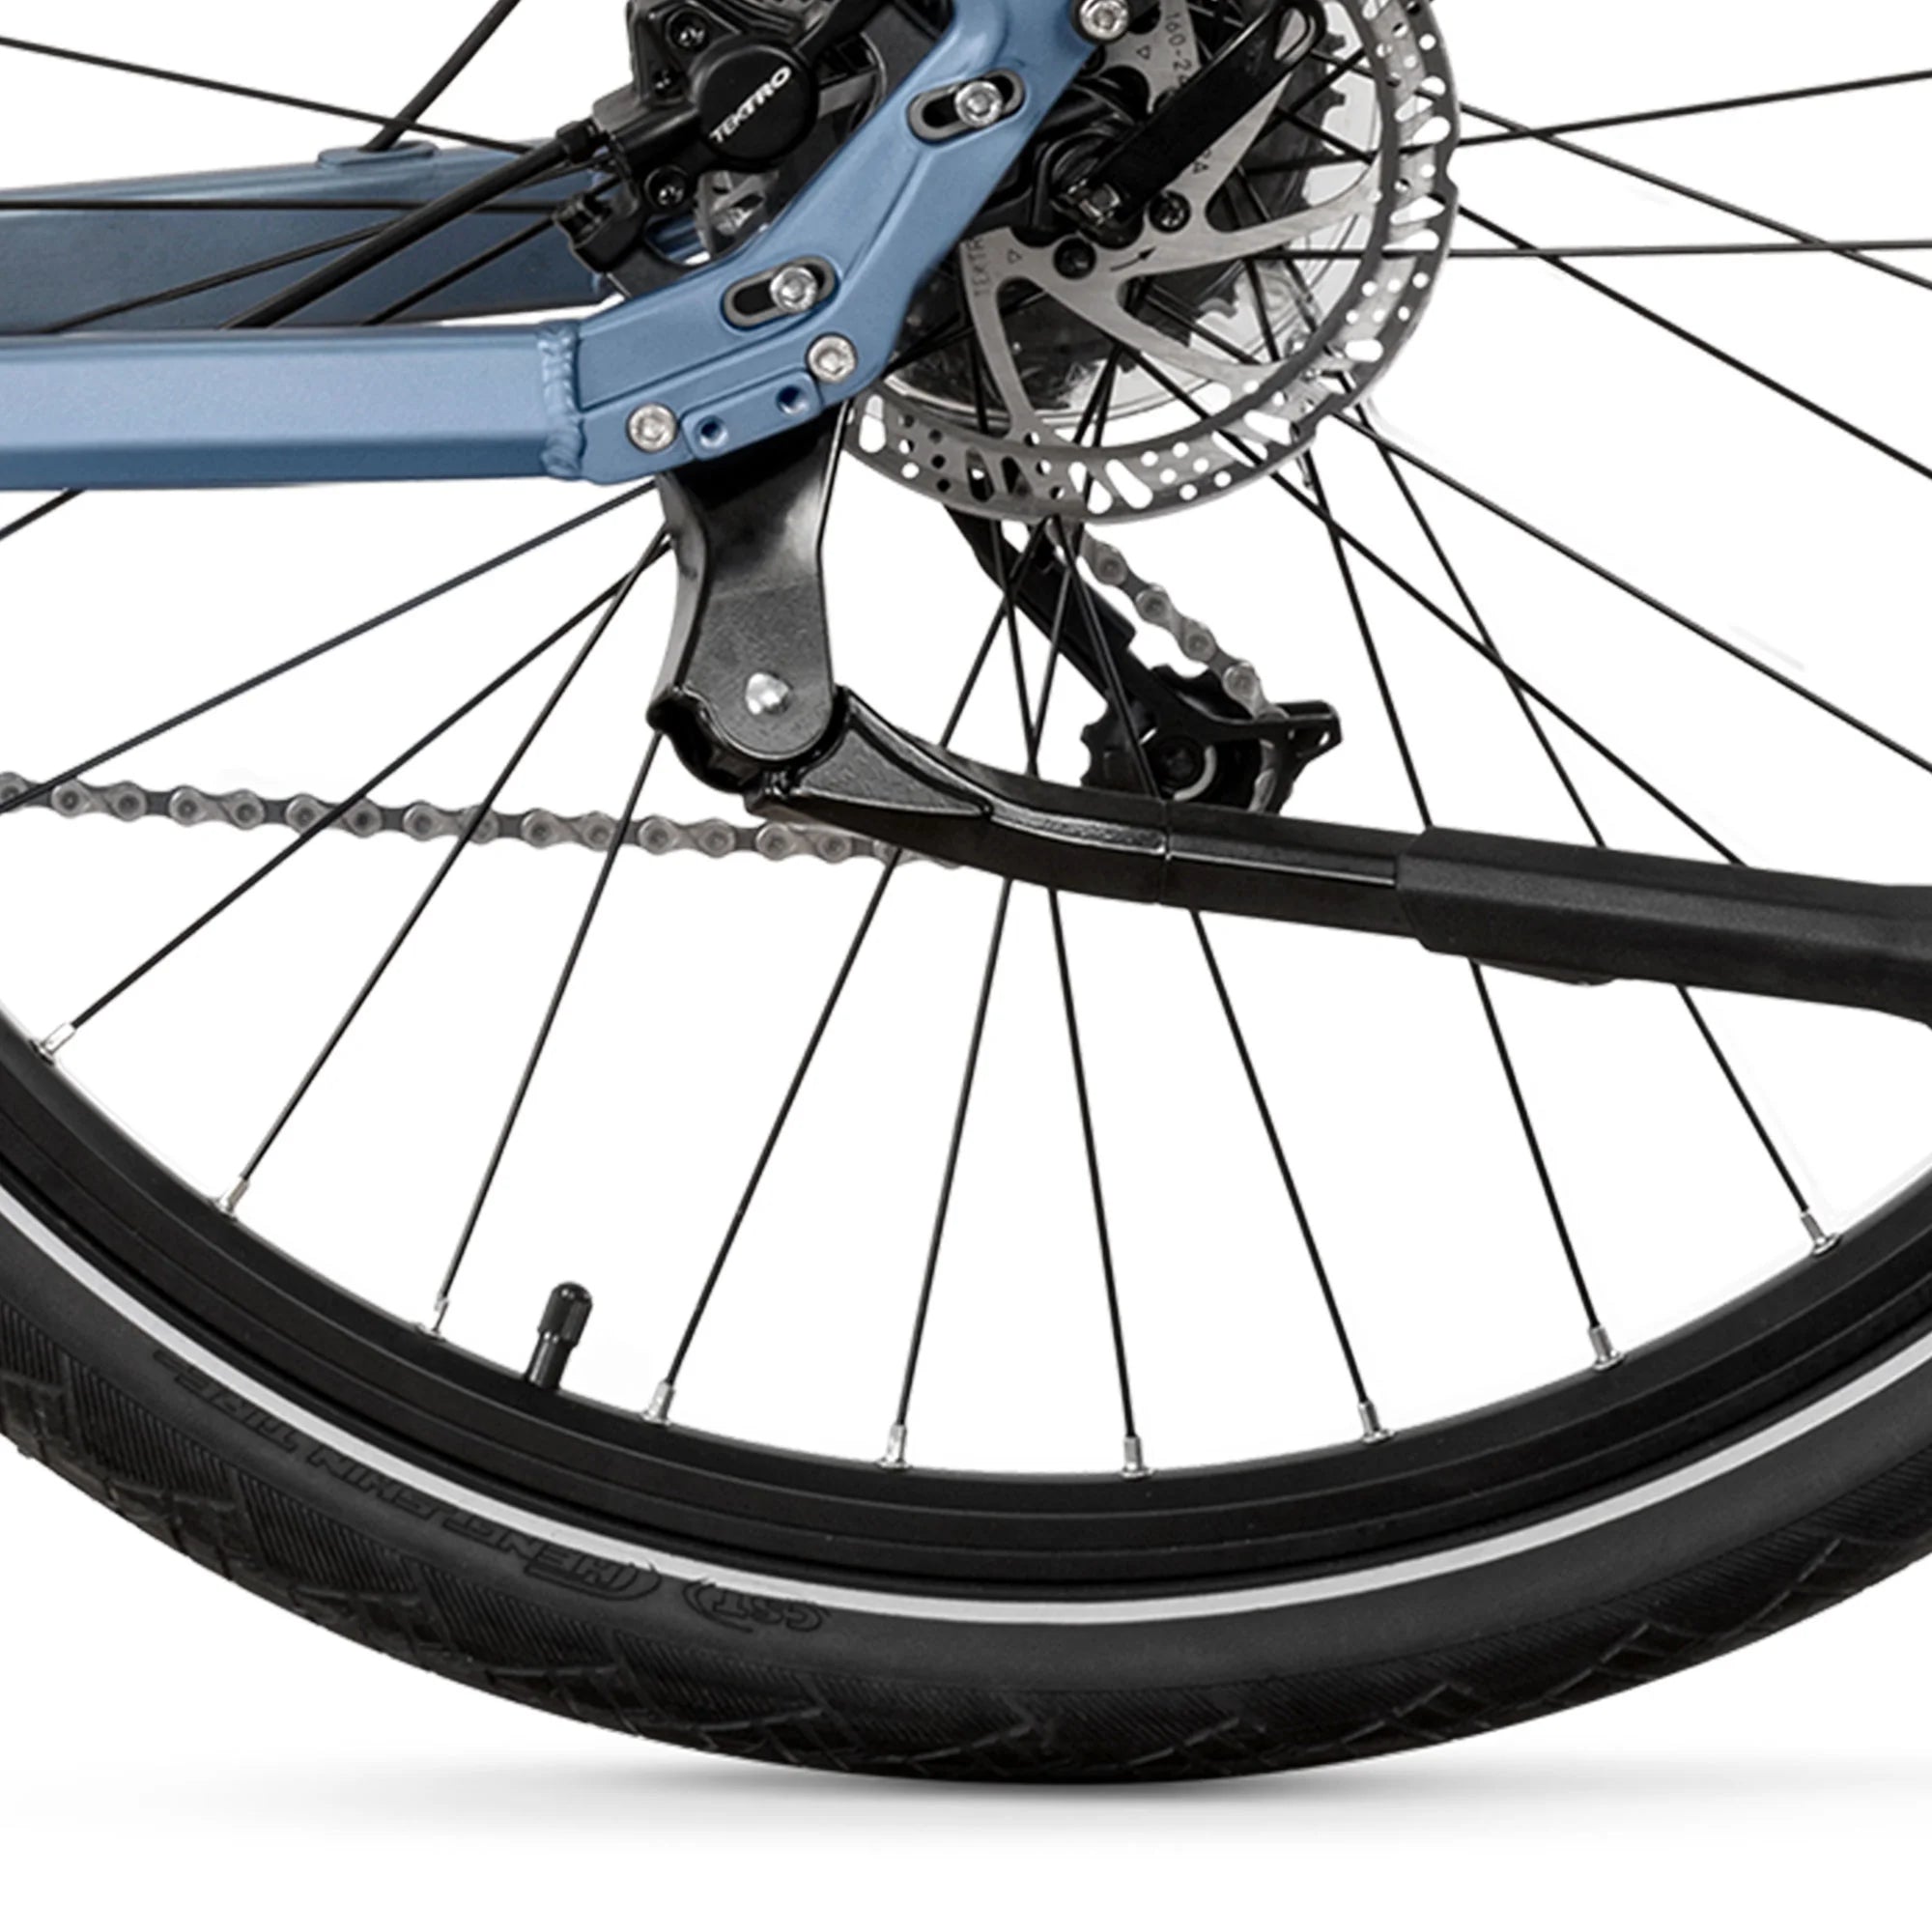 GRUNDIG GCB-1 Bicicletta elettrica Eisblau